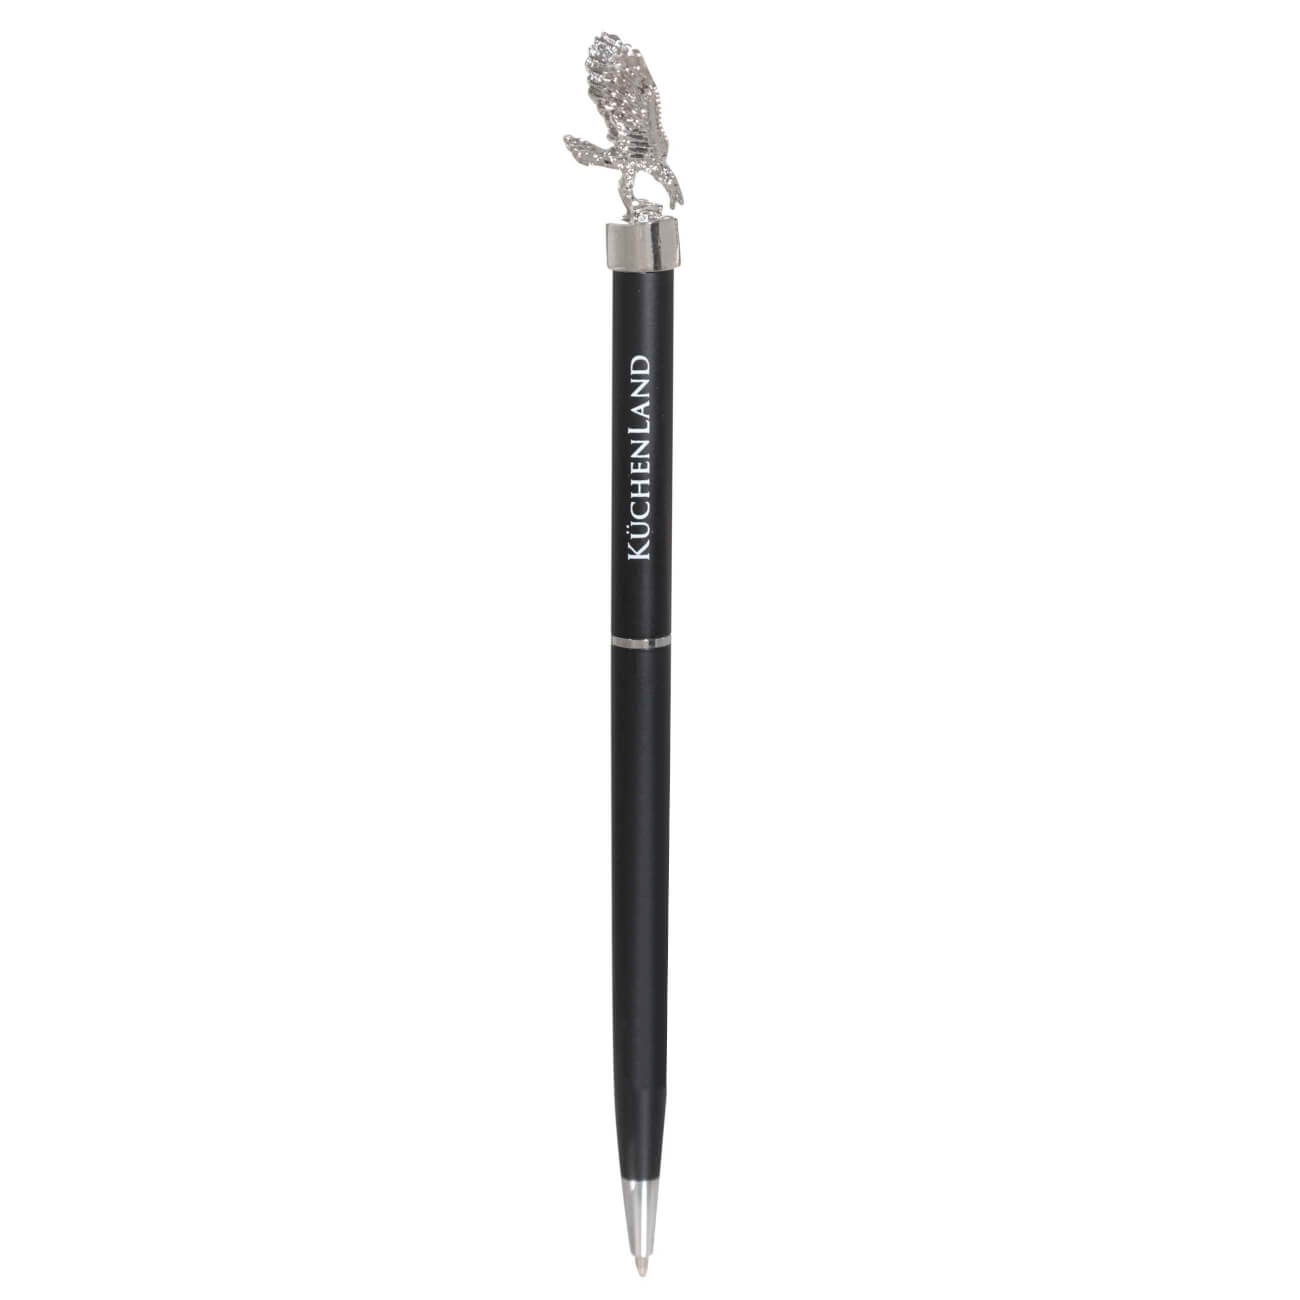 Ручка шариковая, 15 см, с фигуркой, сталь, черная, Орел, Draw figure ручка скоба cappio pc183 96 мм бронза